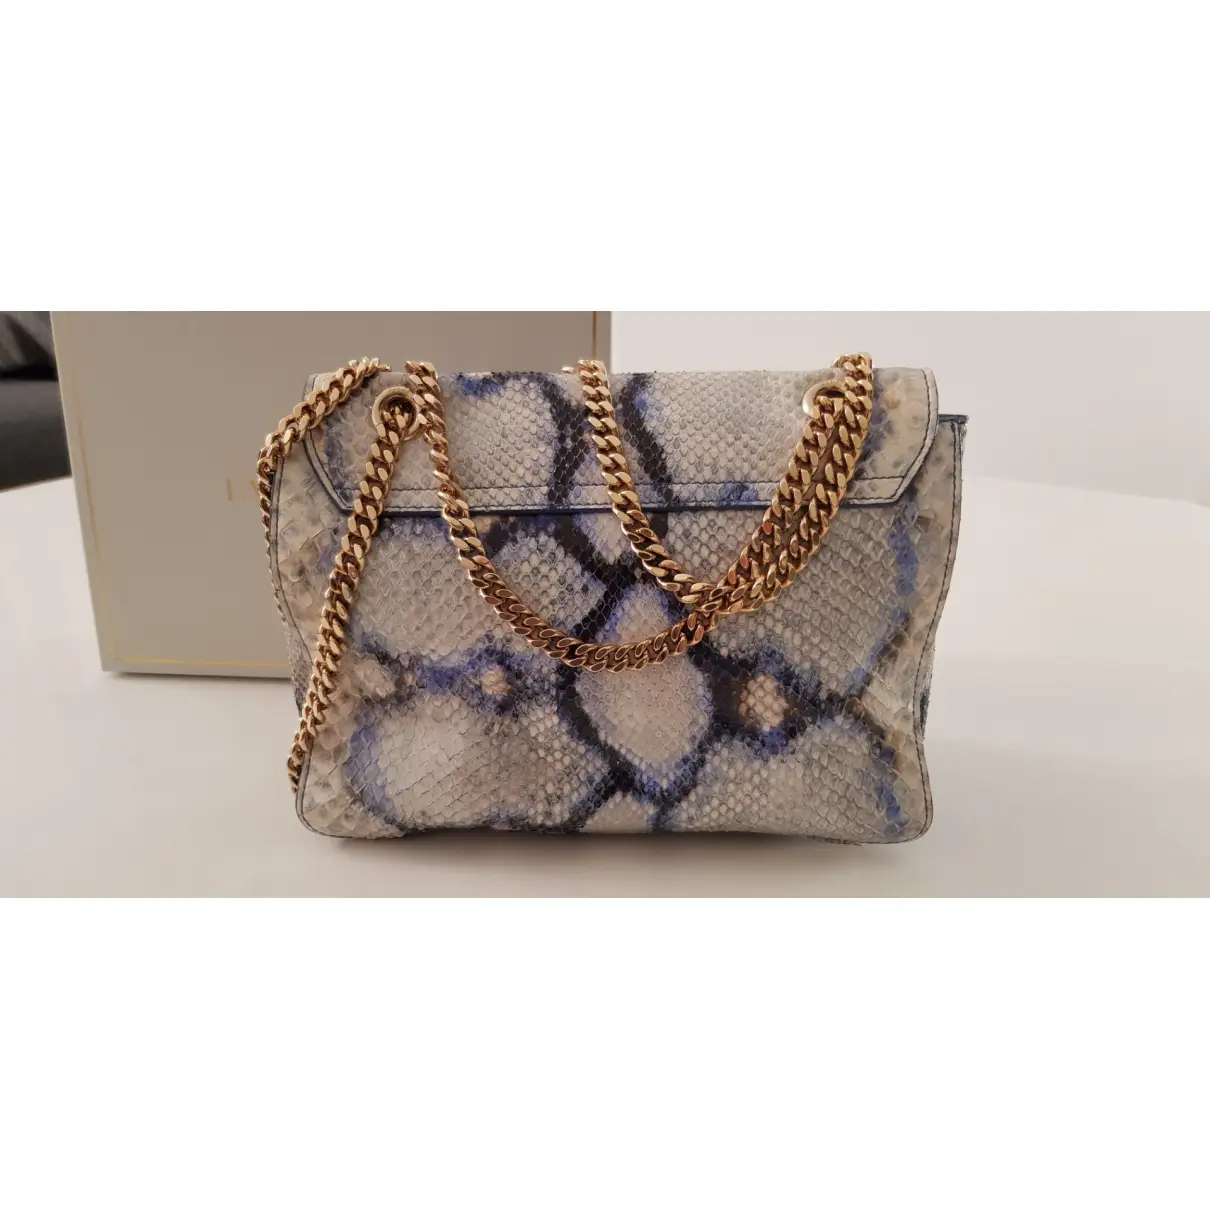 Buy Emilio Pucci Python handbag online